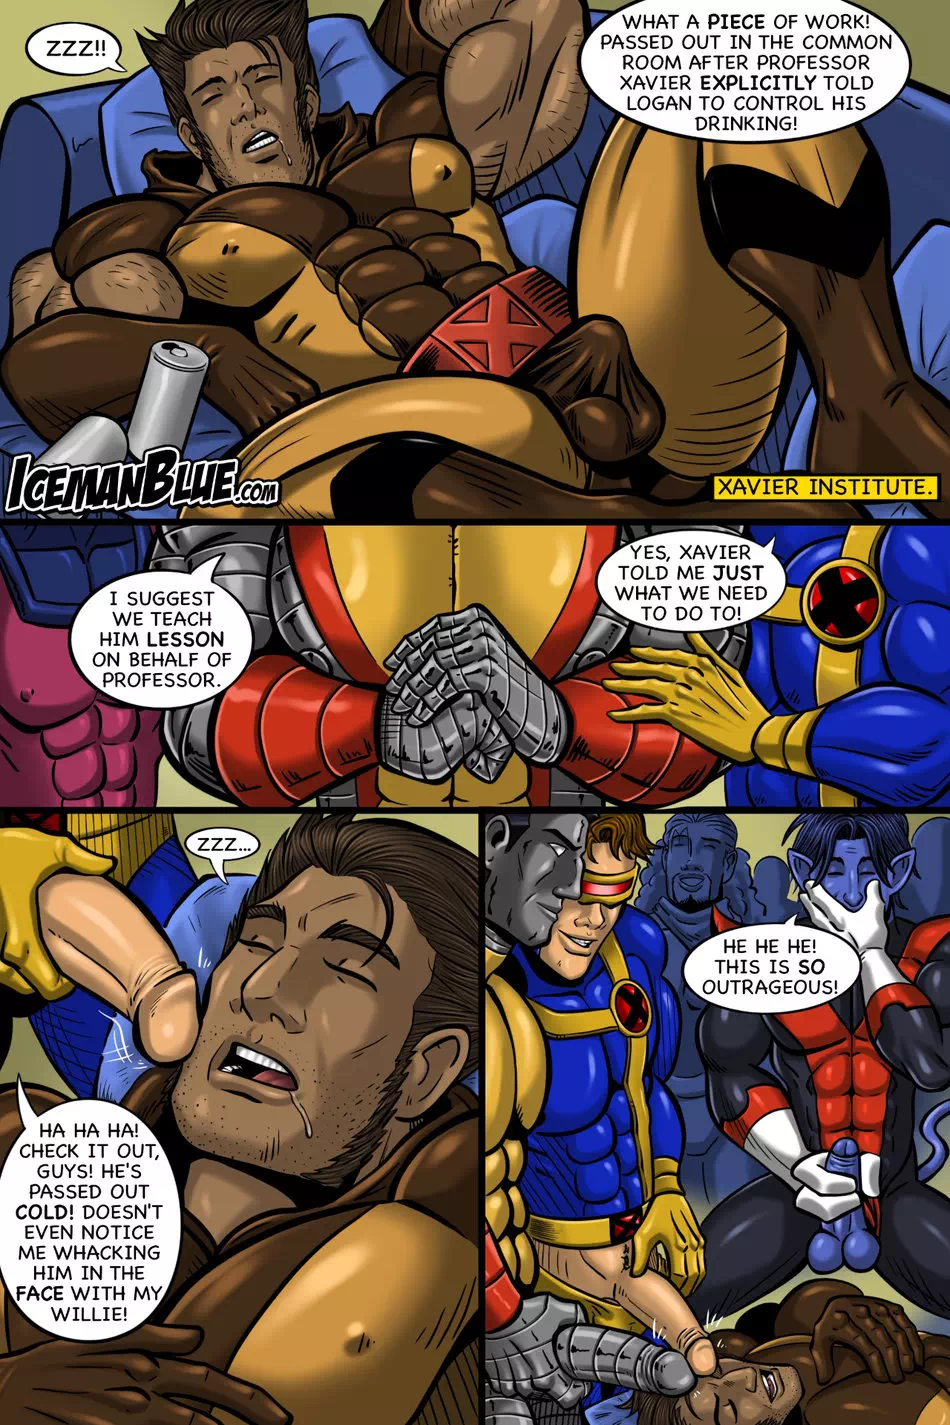 X-Men Порно комиксы, мультфильм порно комиксы, комиксы Правило 34